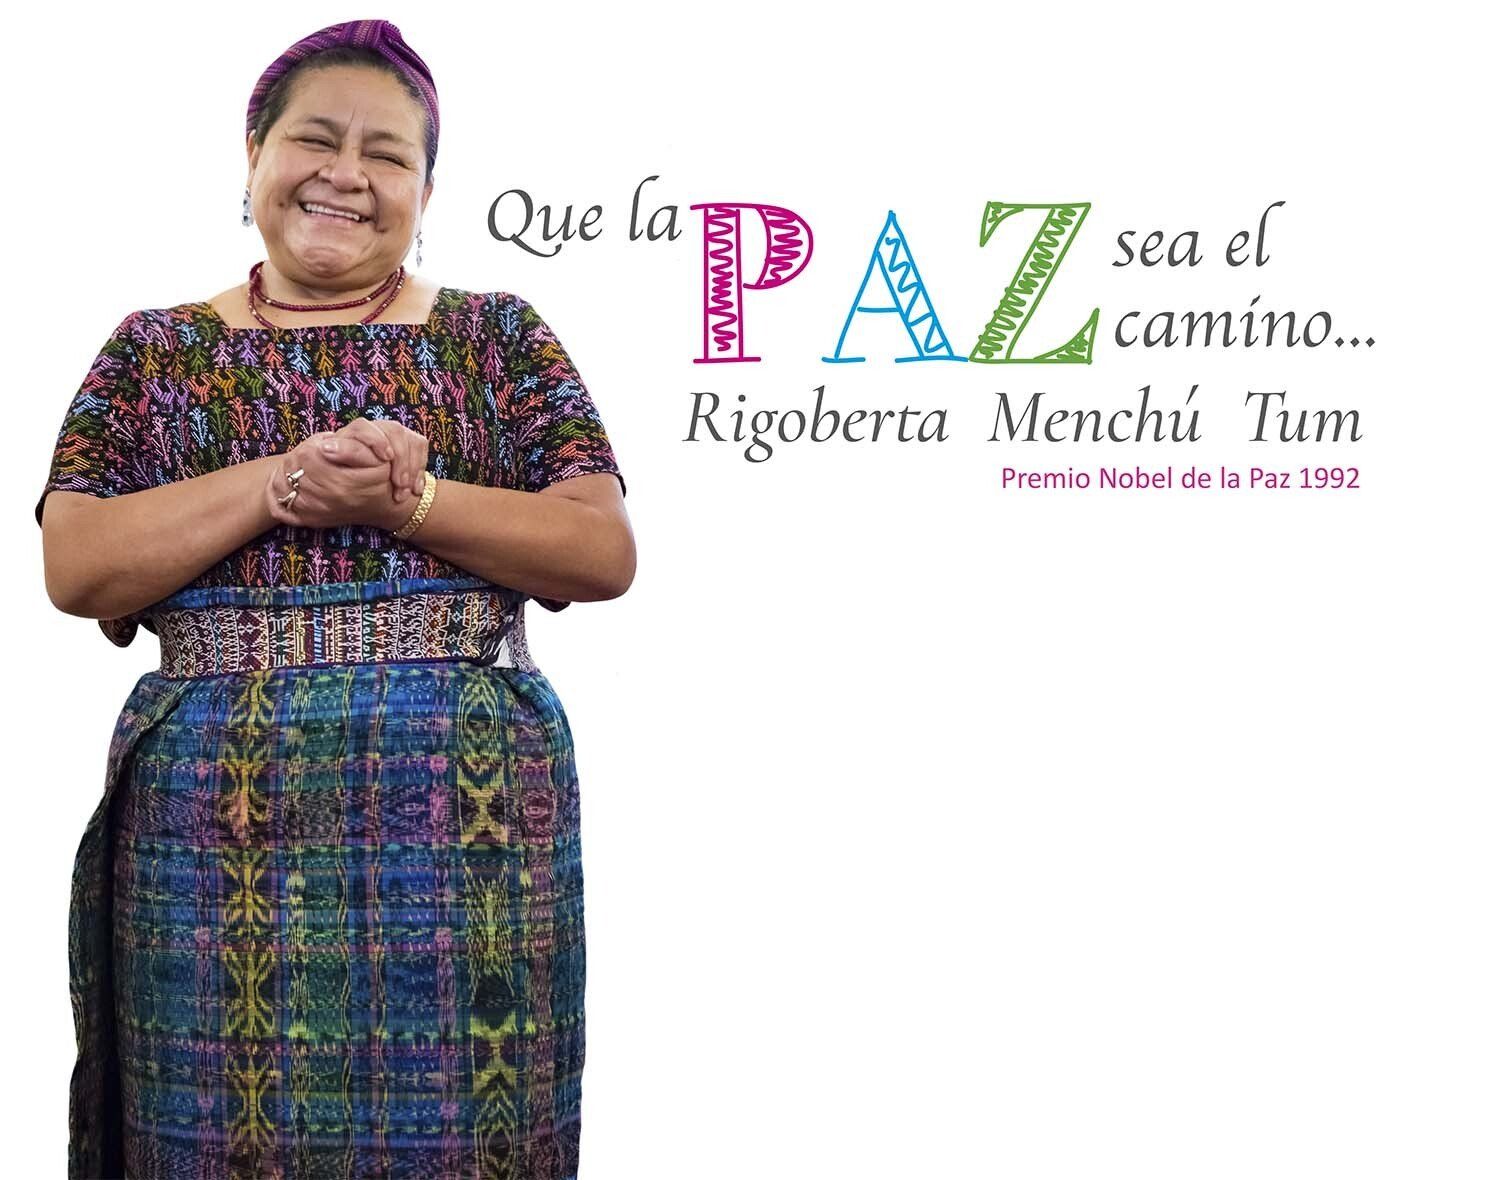 Rigoberta Menchú Tum